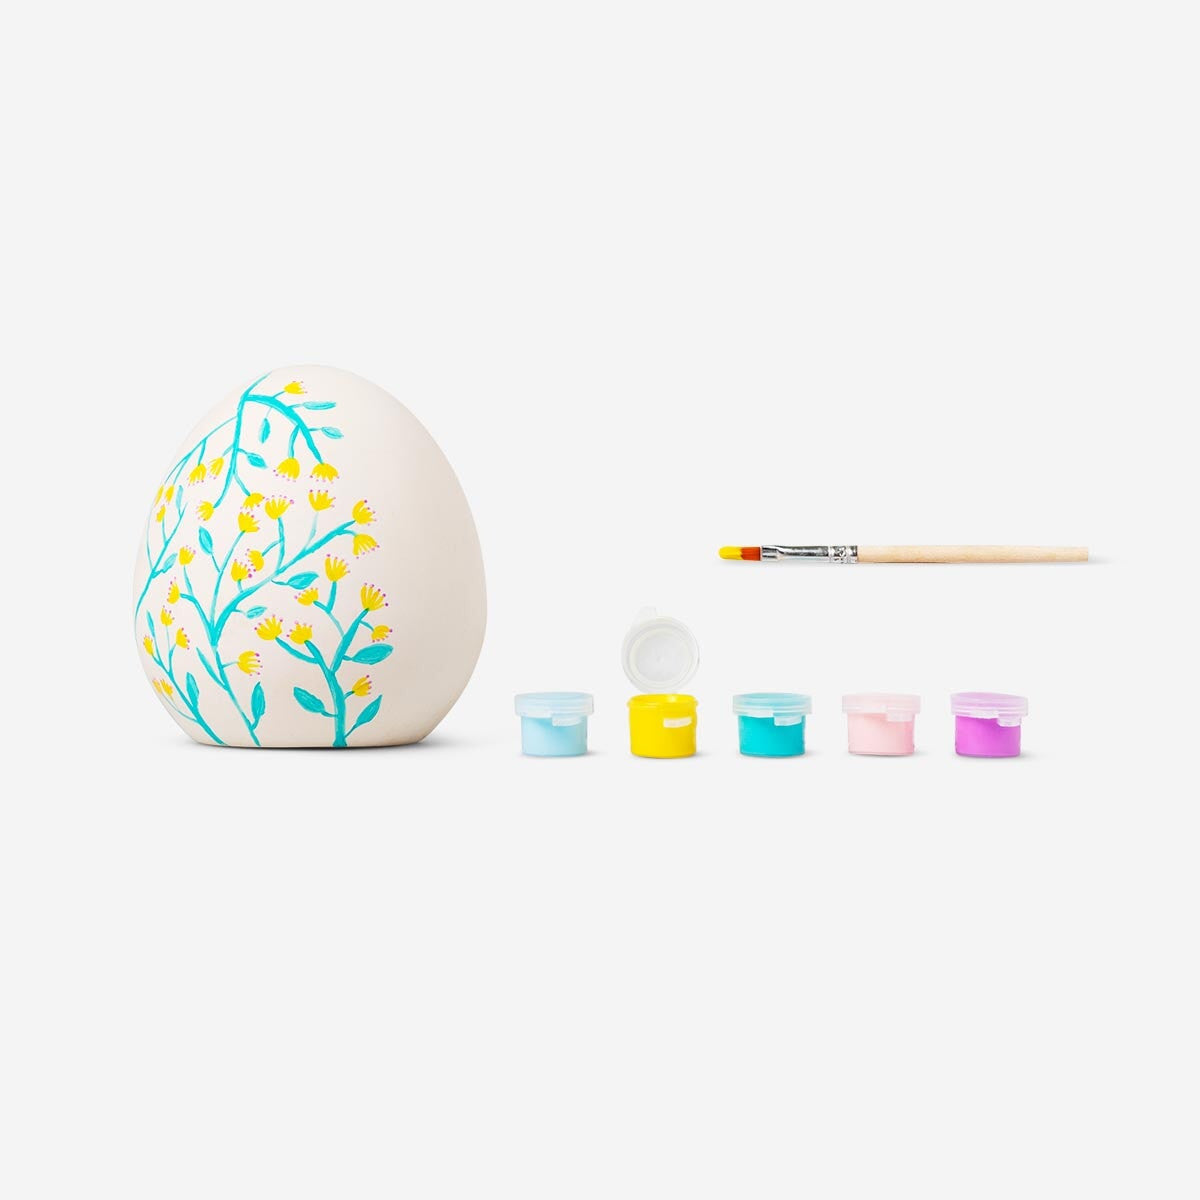 Paint-your-own Easter egg. Small Hobby Flying Tiger Copenhagen 